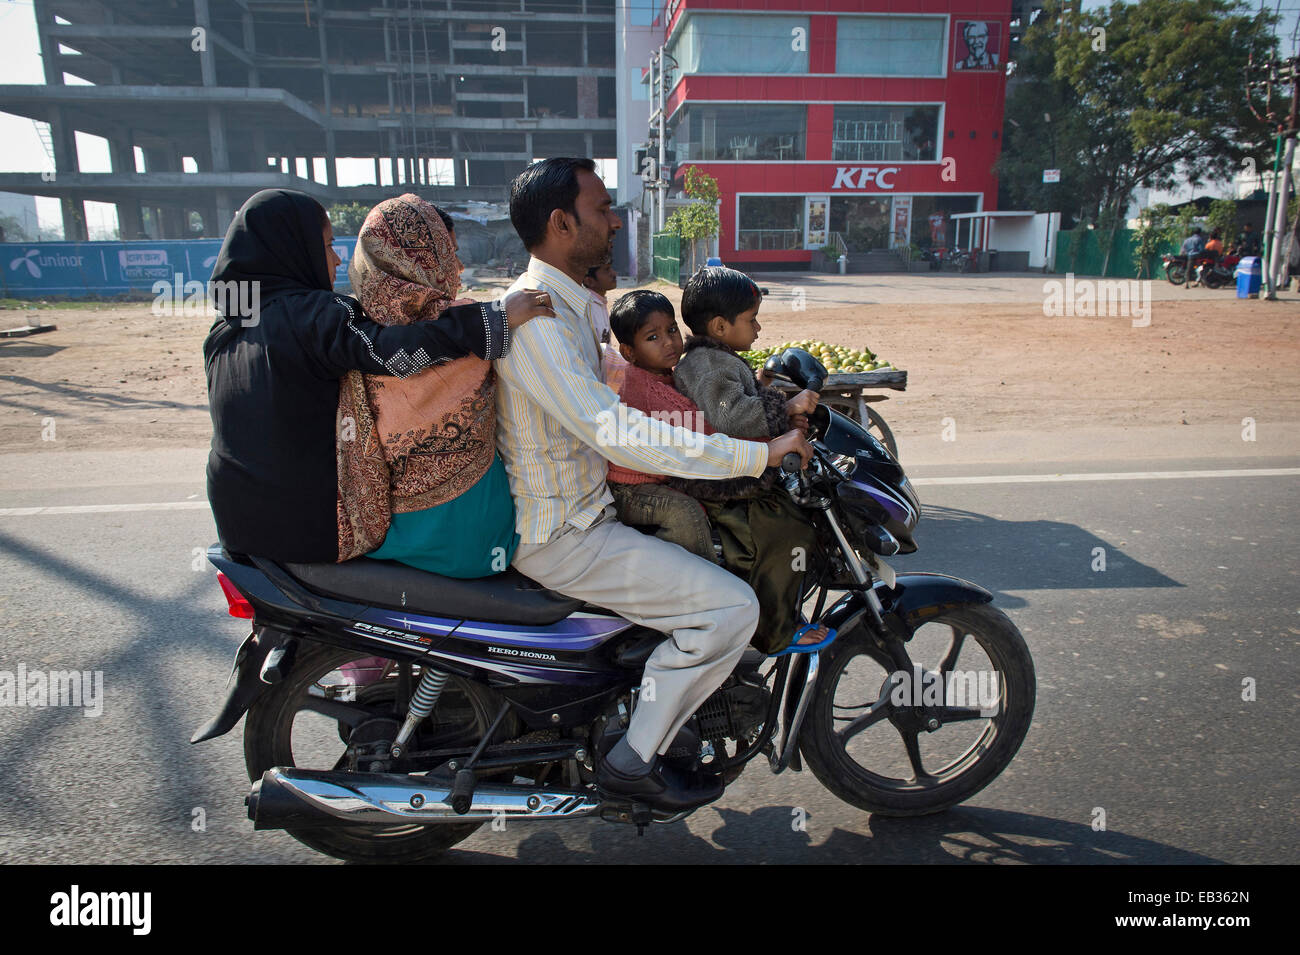 Deux femmes, un homme et deux enfants assis ensemble sur une moto, Agra, Uttar Pradesh, Inde Banque D'Images